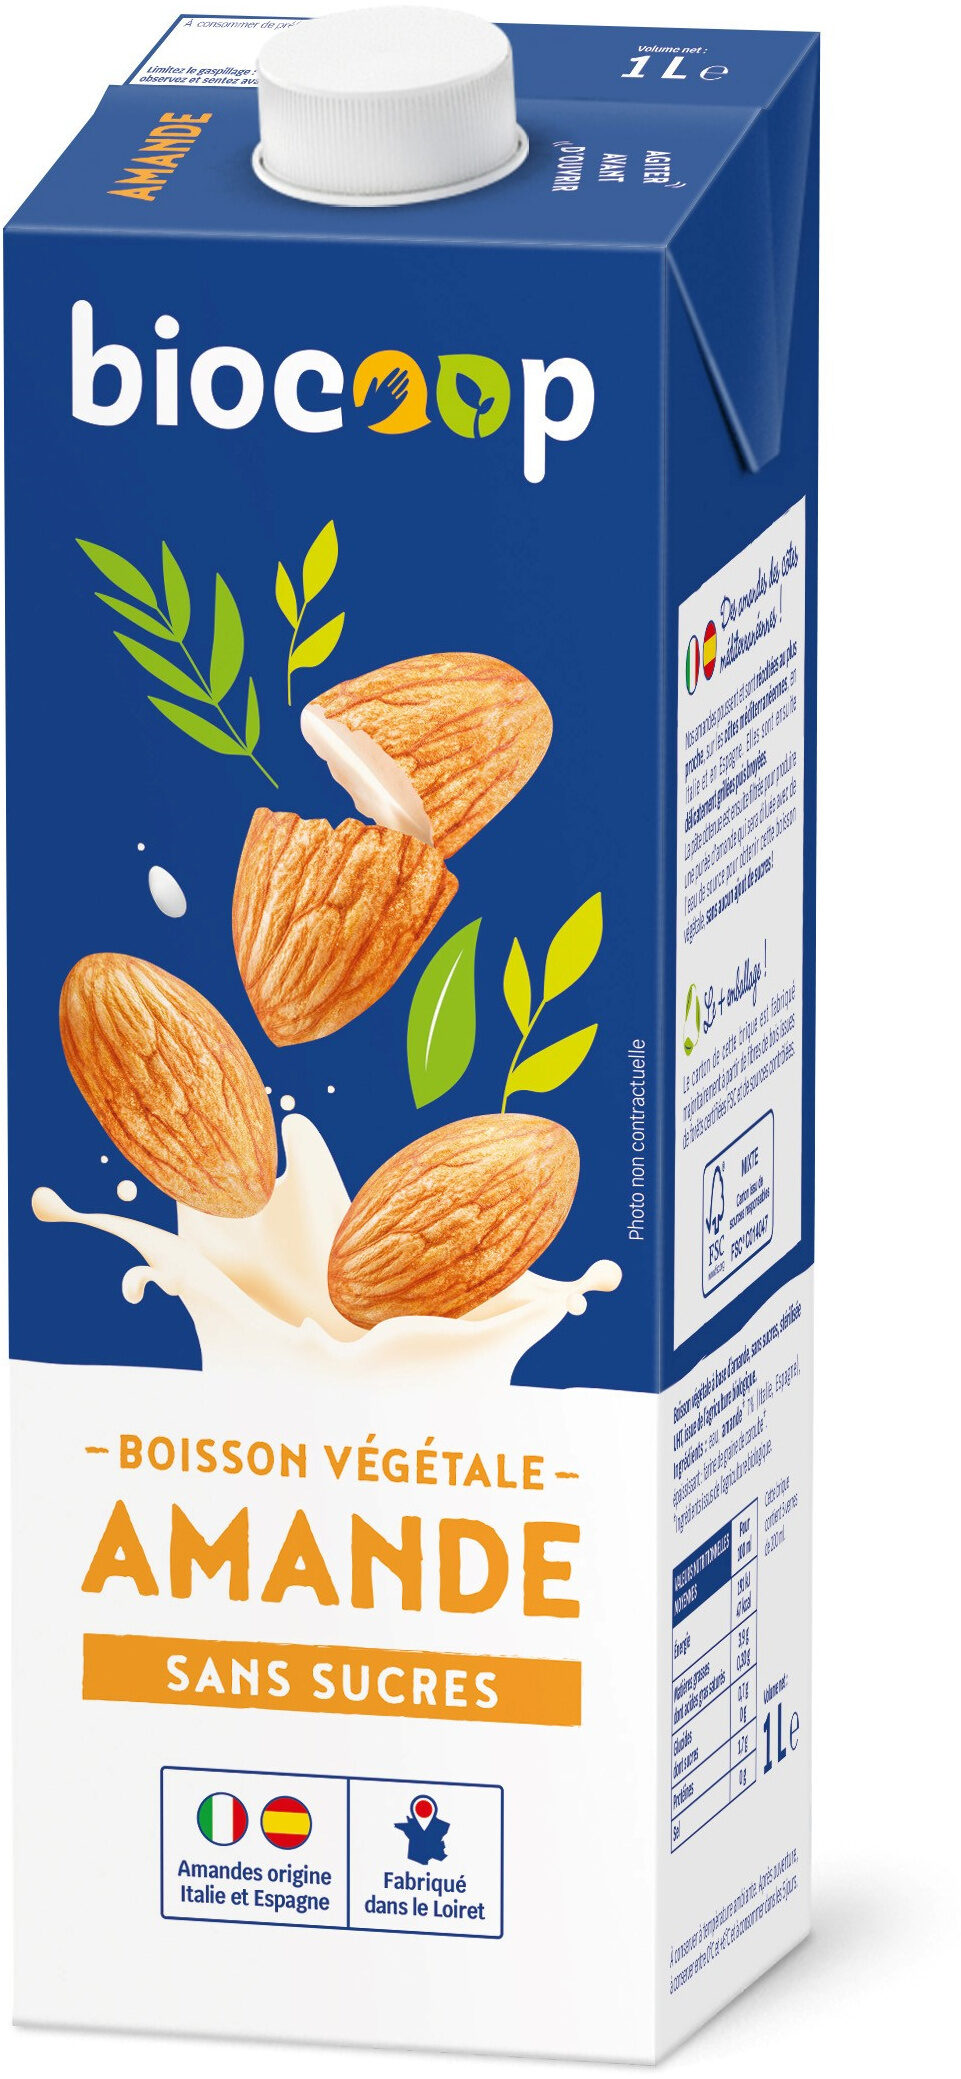 Boisson végétale - Amande sans sucre - Product - fr